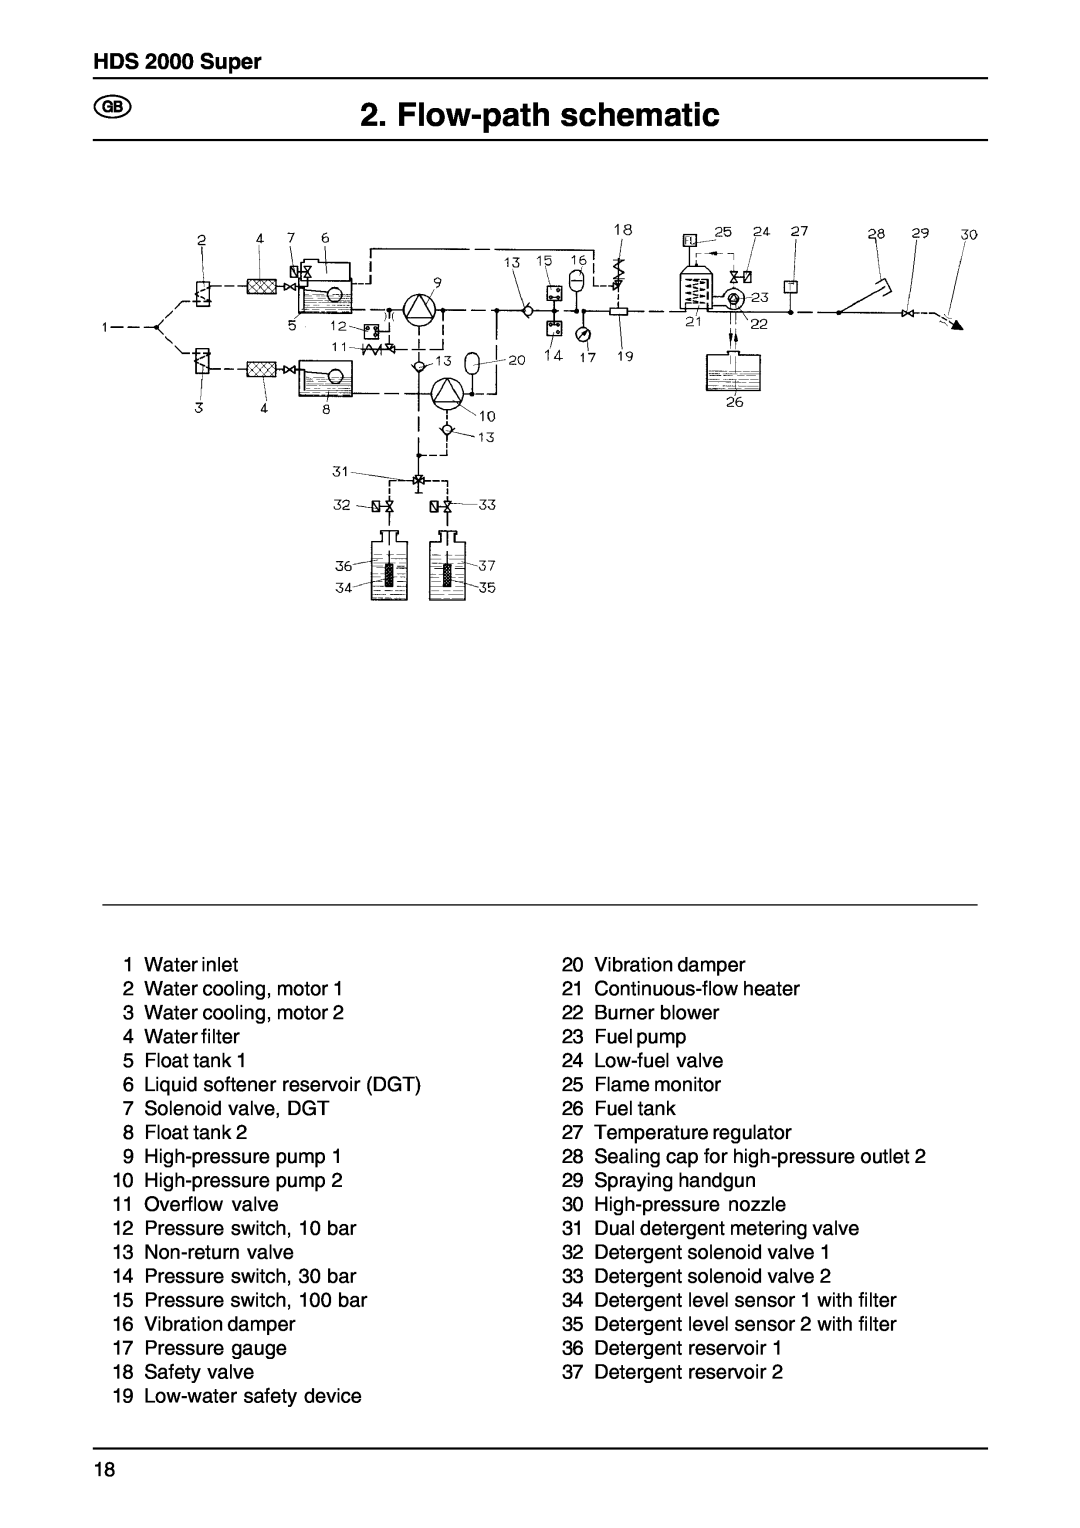 Karcher manual Flow-path schematic, HDS 2000 Super 